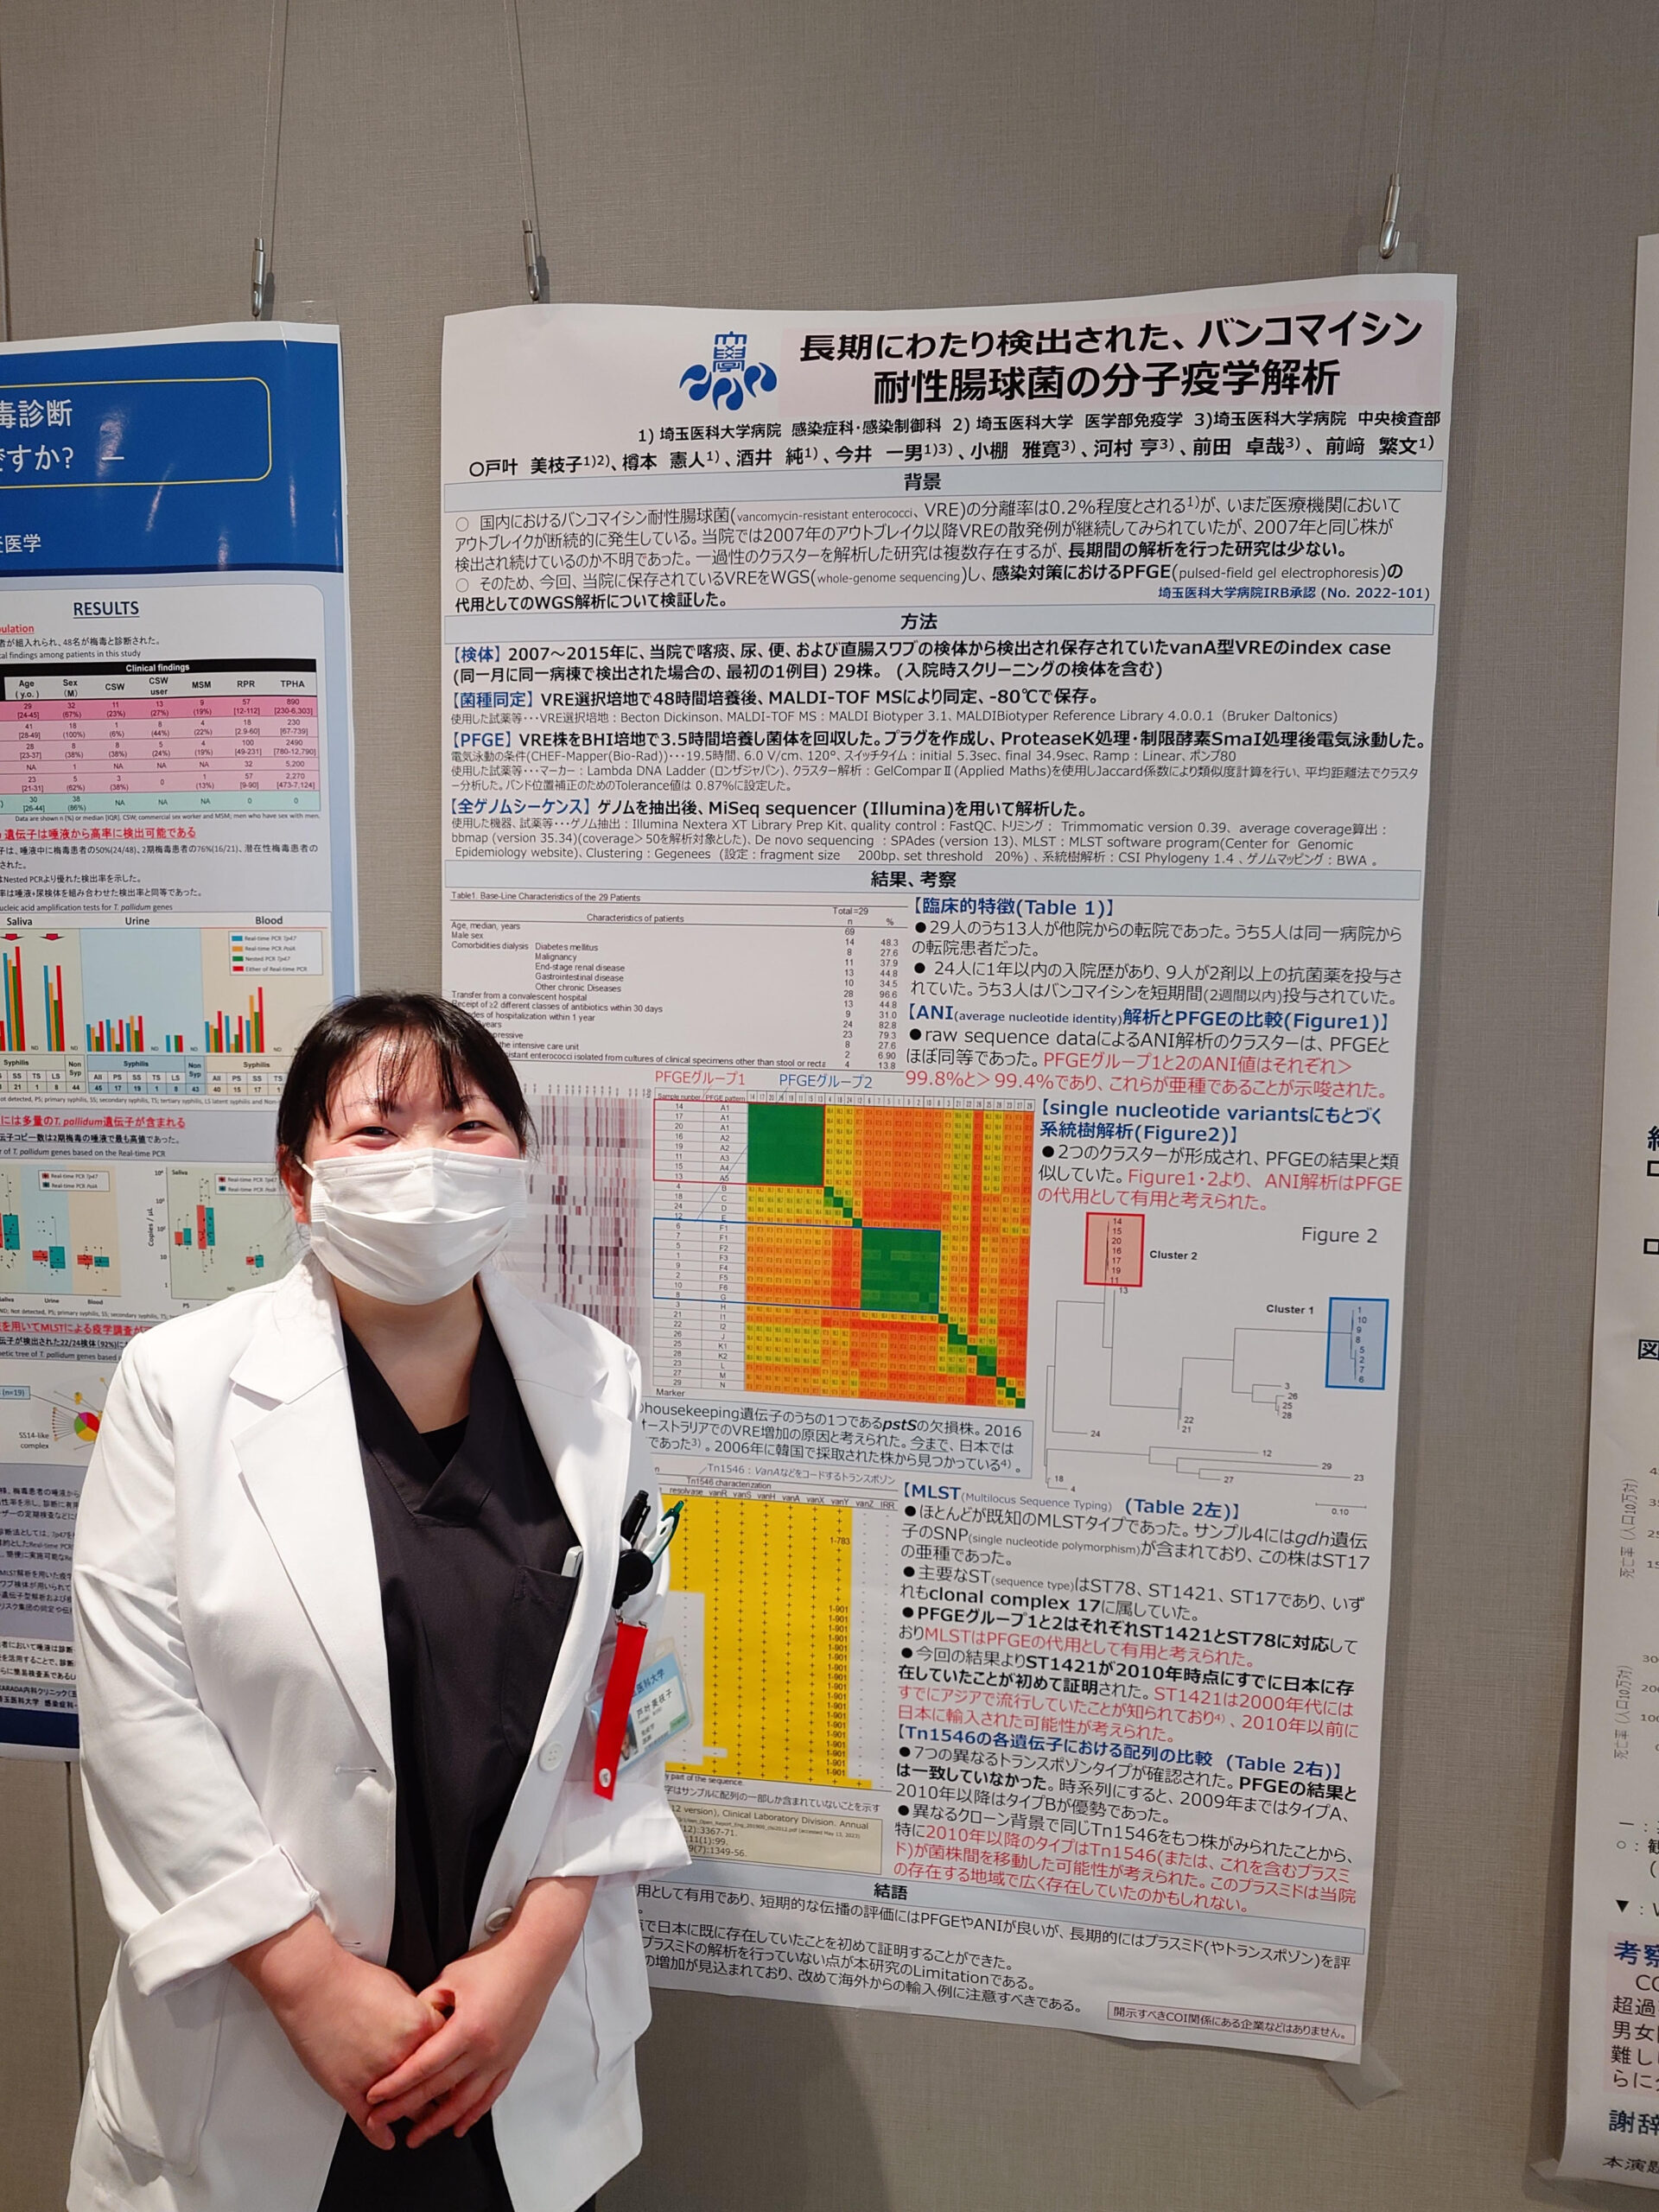 オール埼玉医大 研究の日に発表しました。